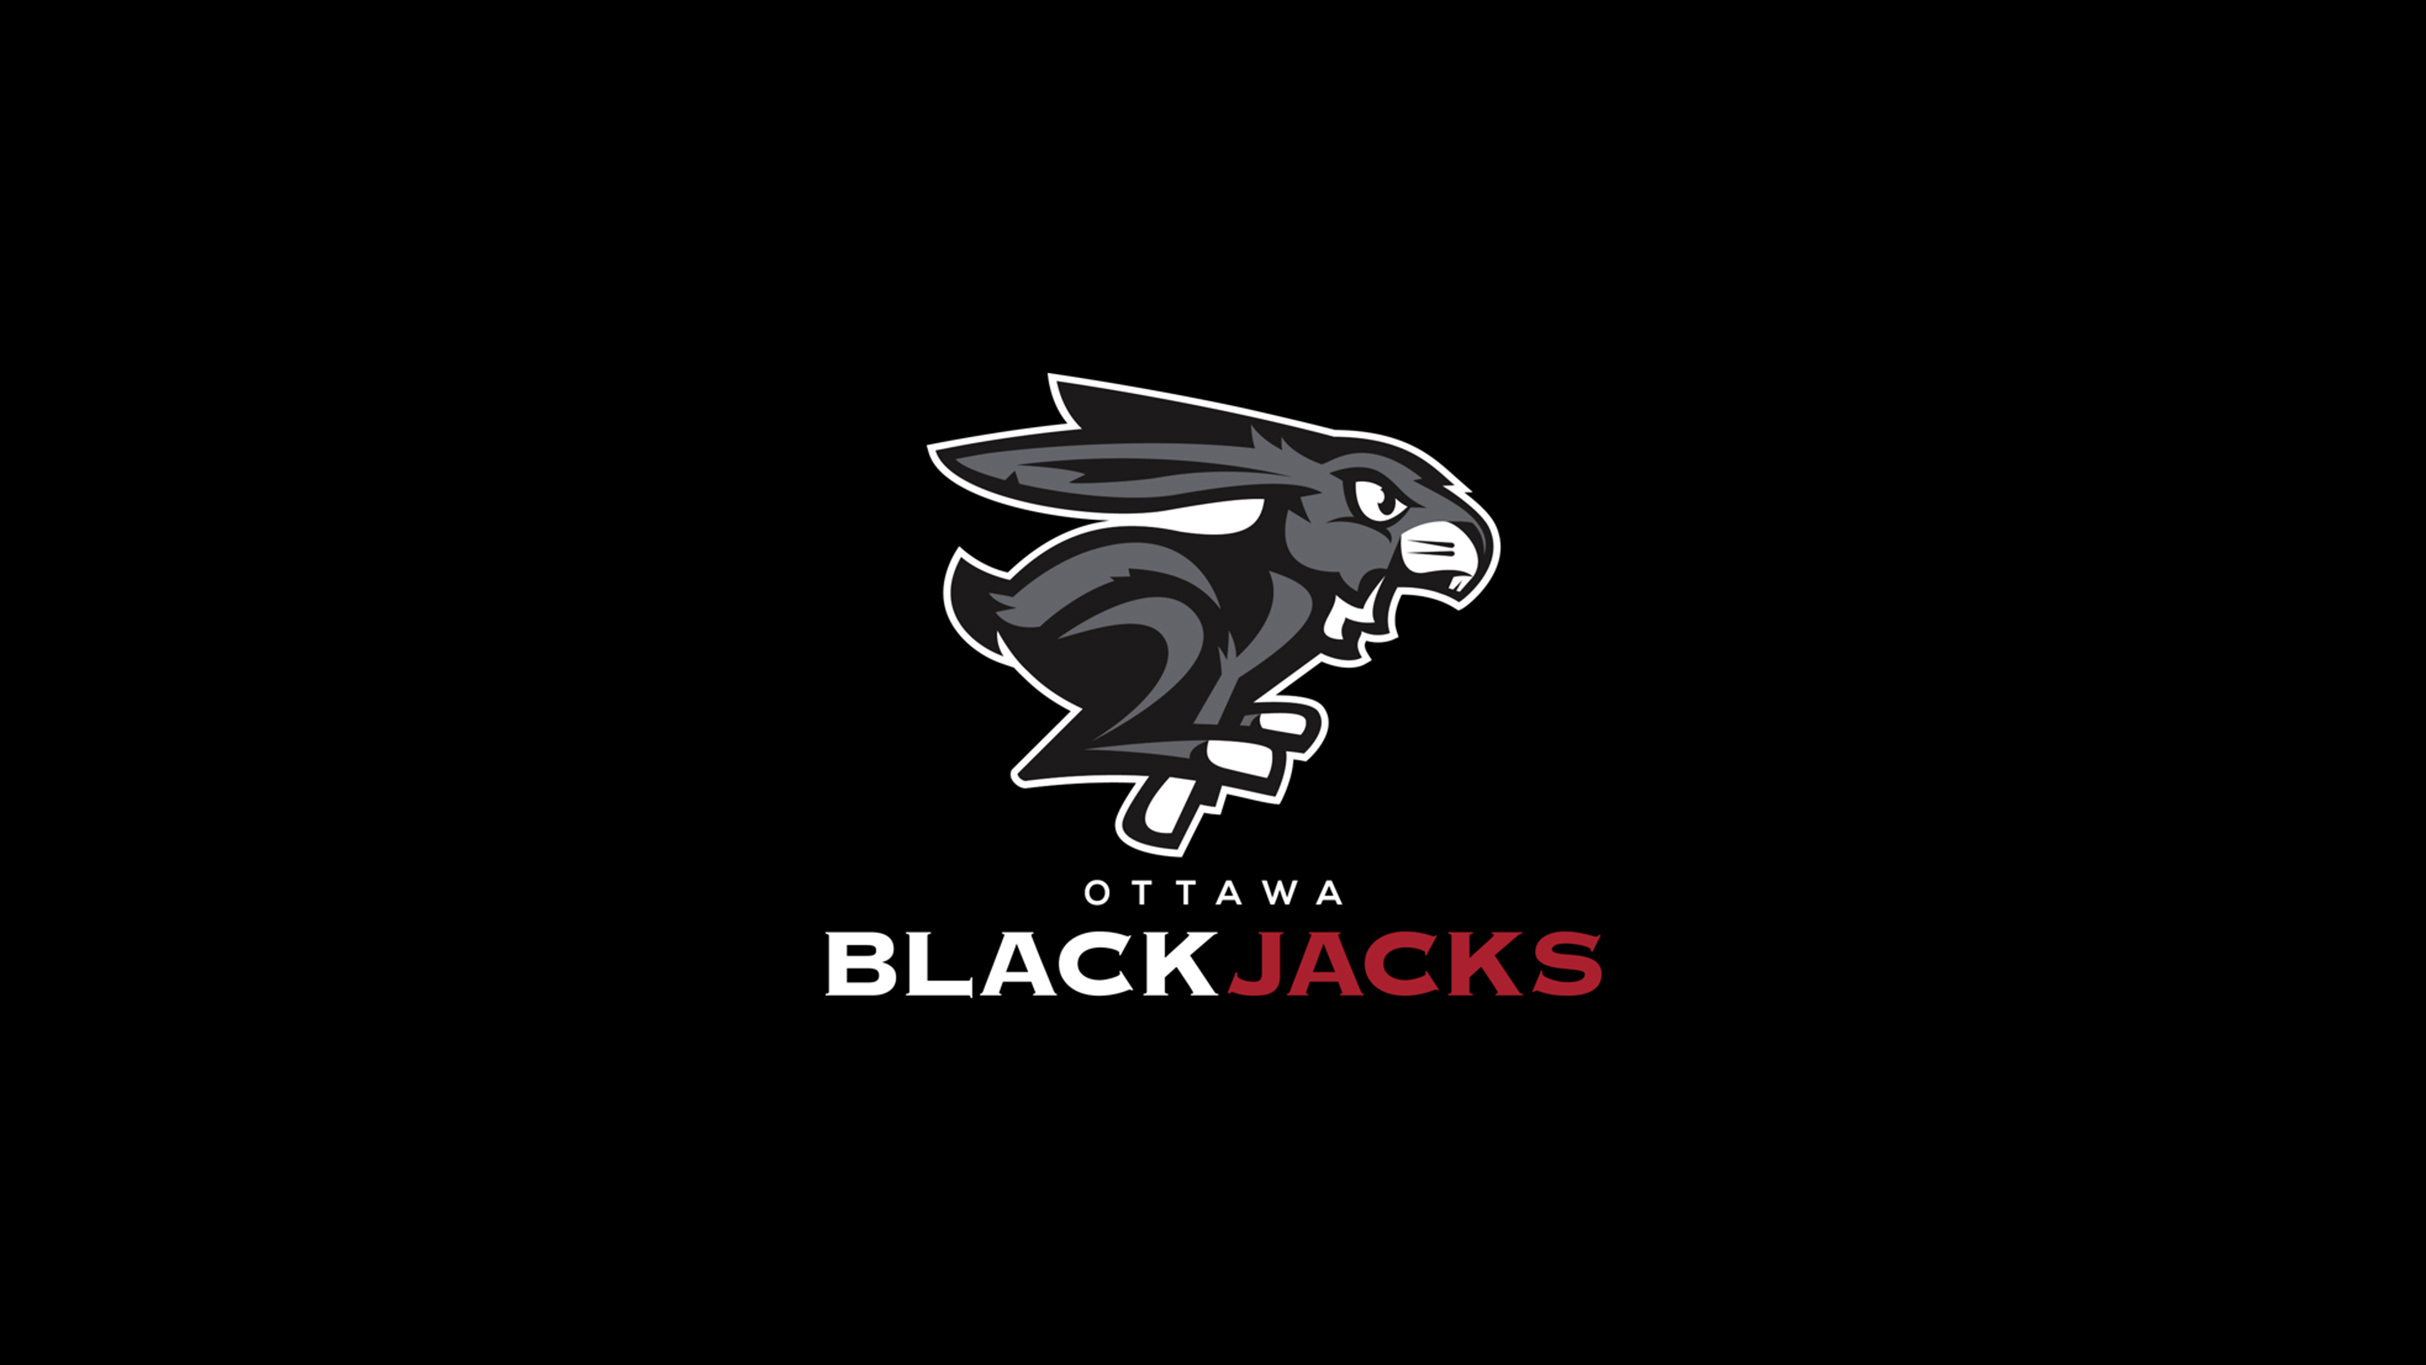 Ottawa Blackjacks vs. Montreal Alliance